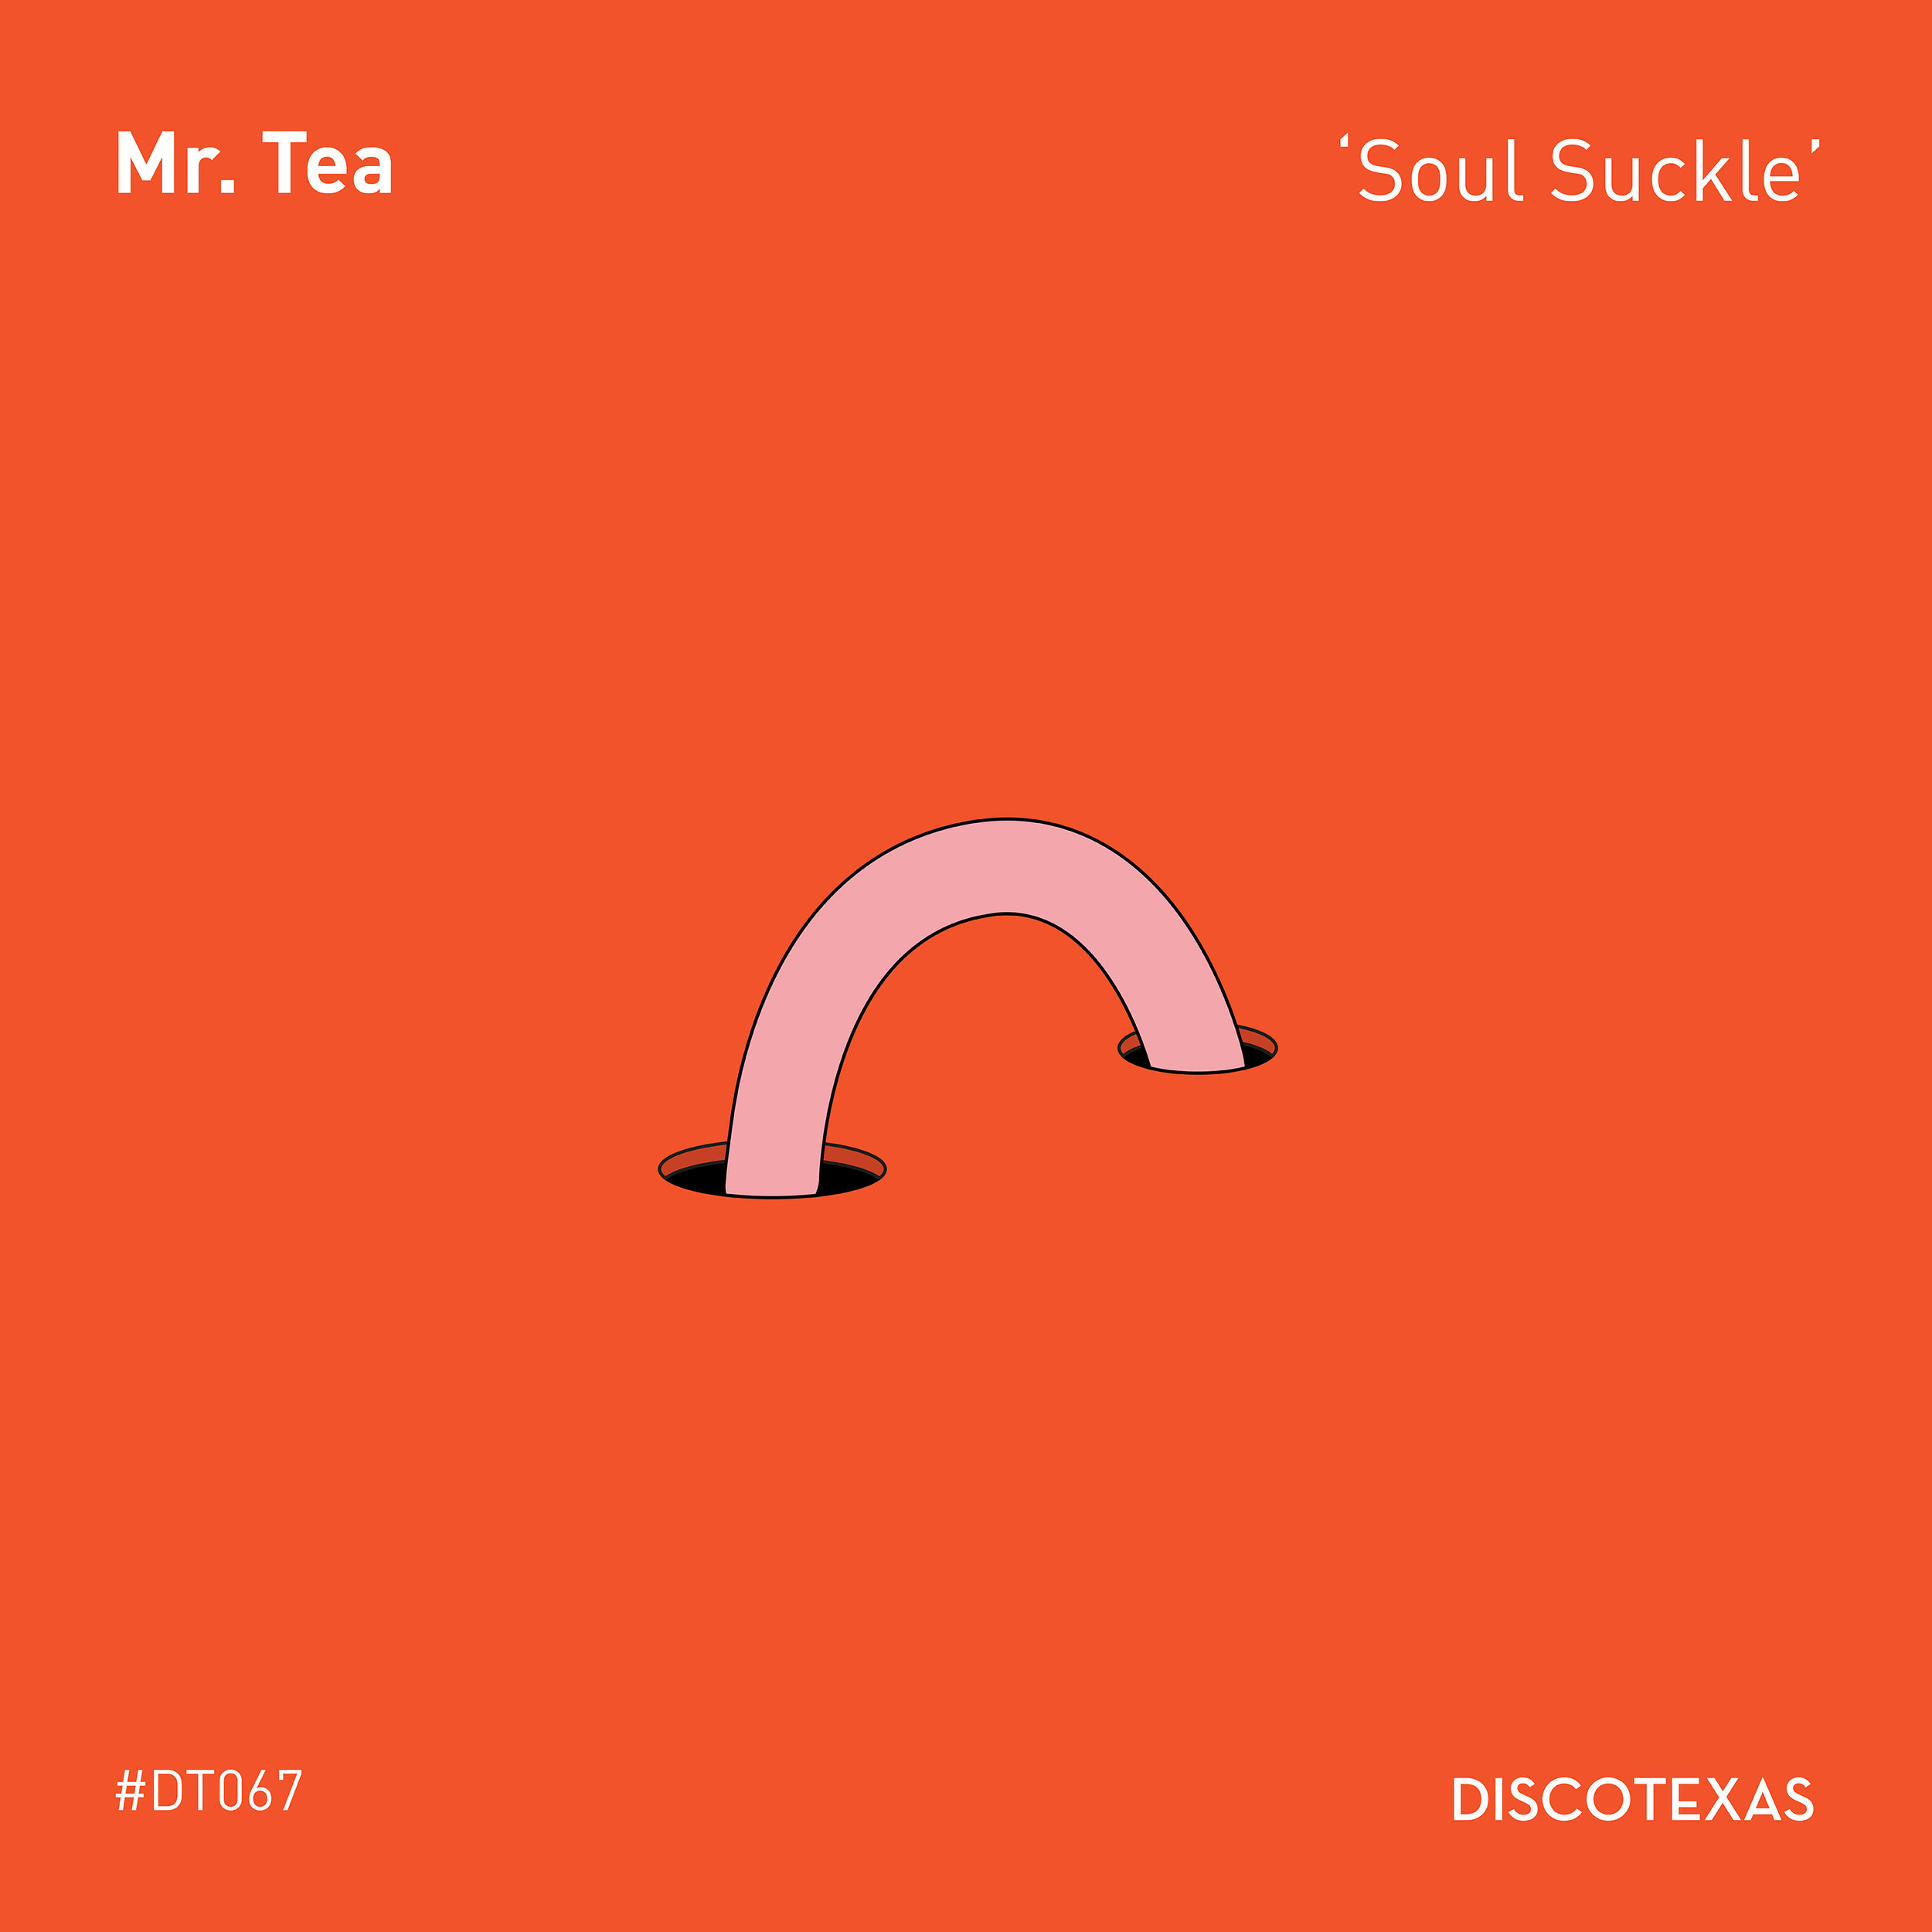 DT067: Mr. Tea - Soul Suckle